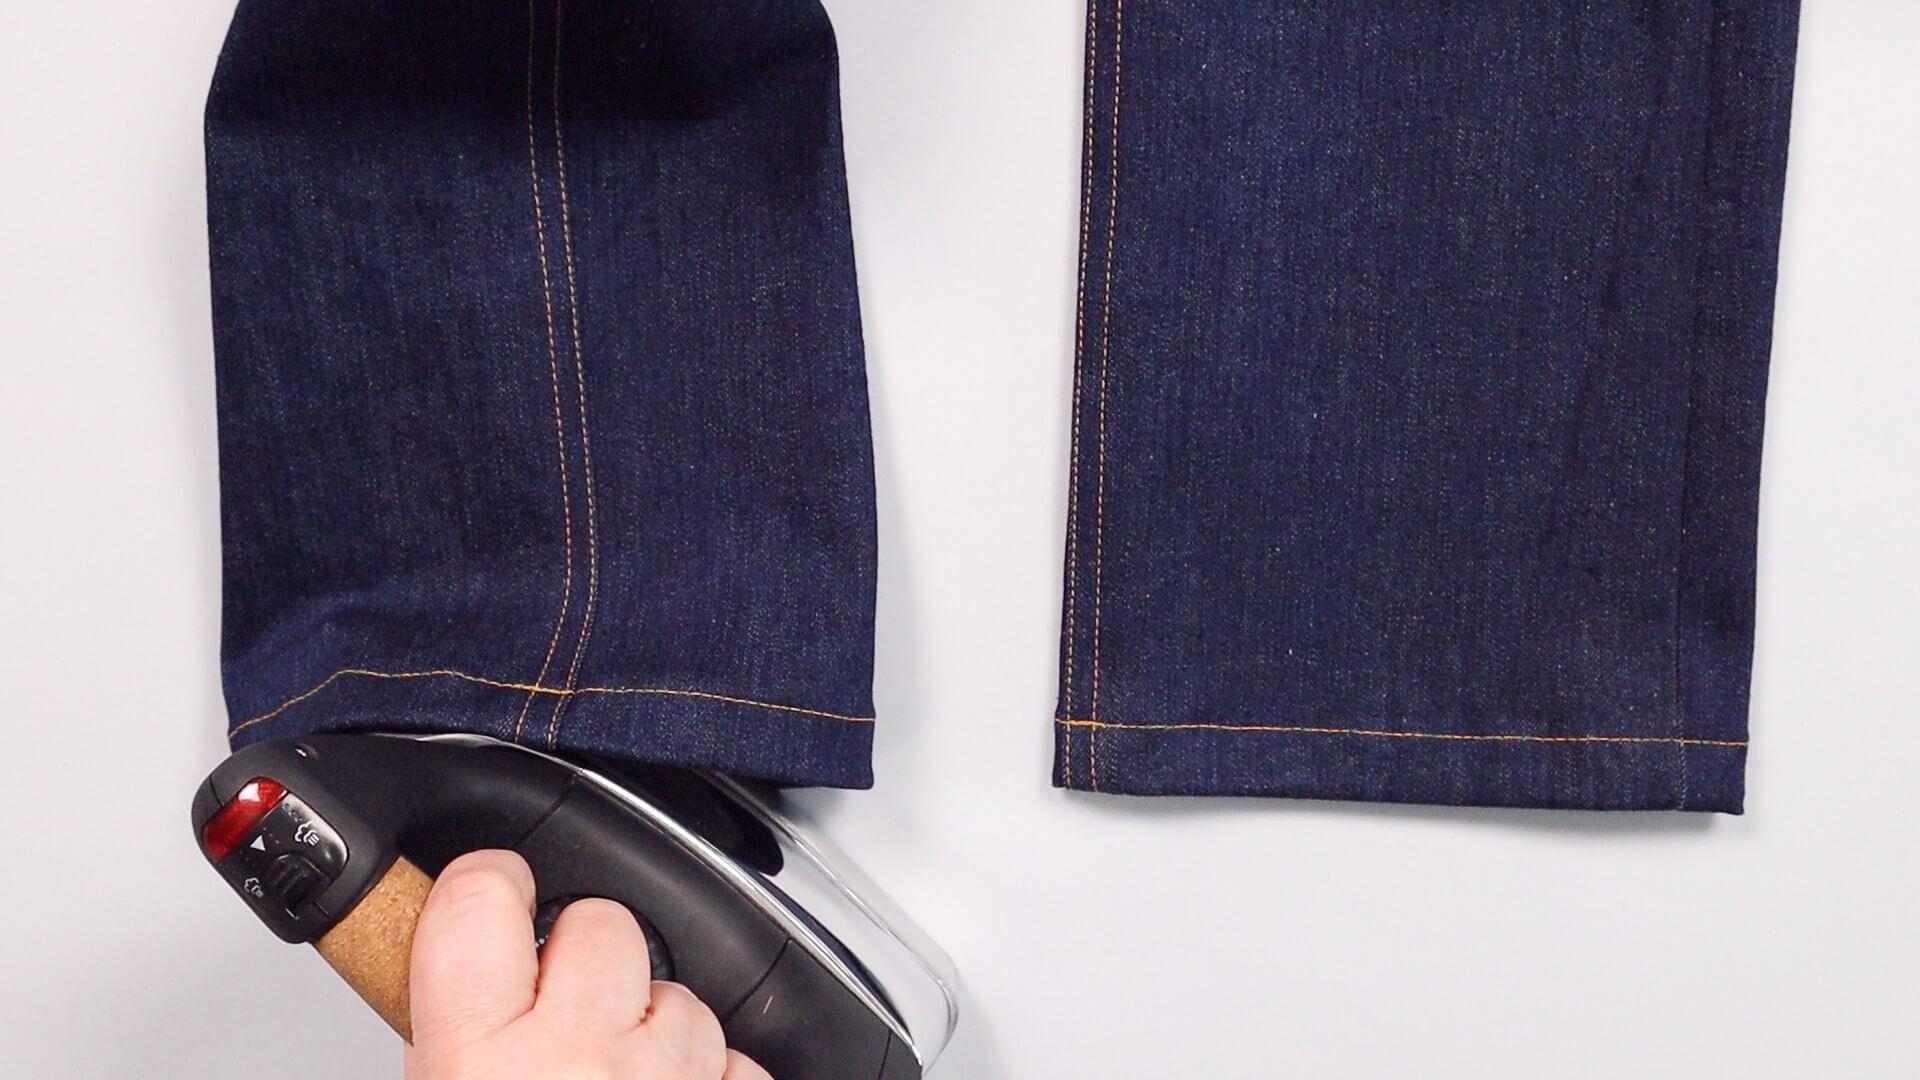 smartPATTERN Nähanleitung angeschnittenen Hosensaum an Jeanshose nähen - fertigen Hosensaum bügeln